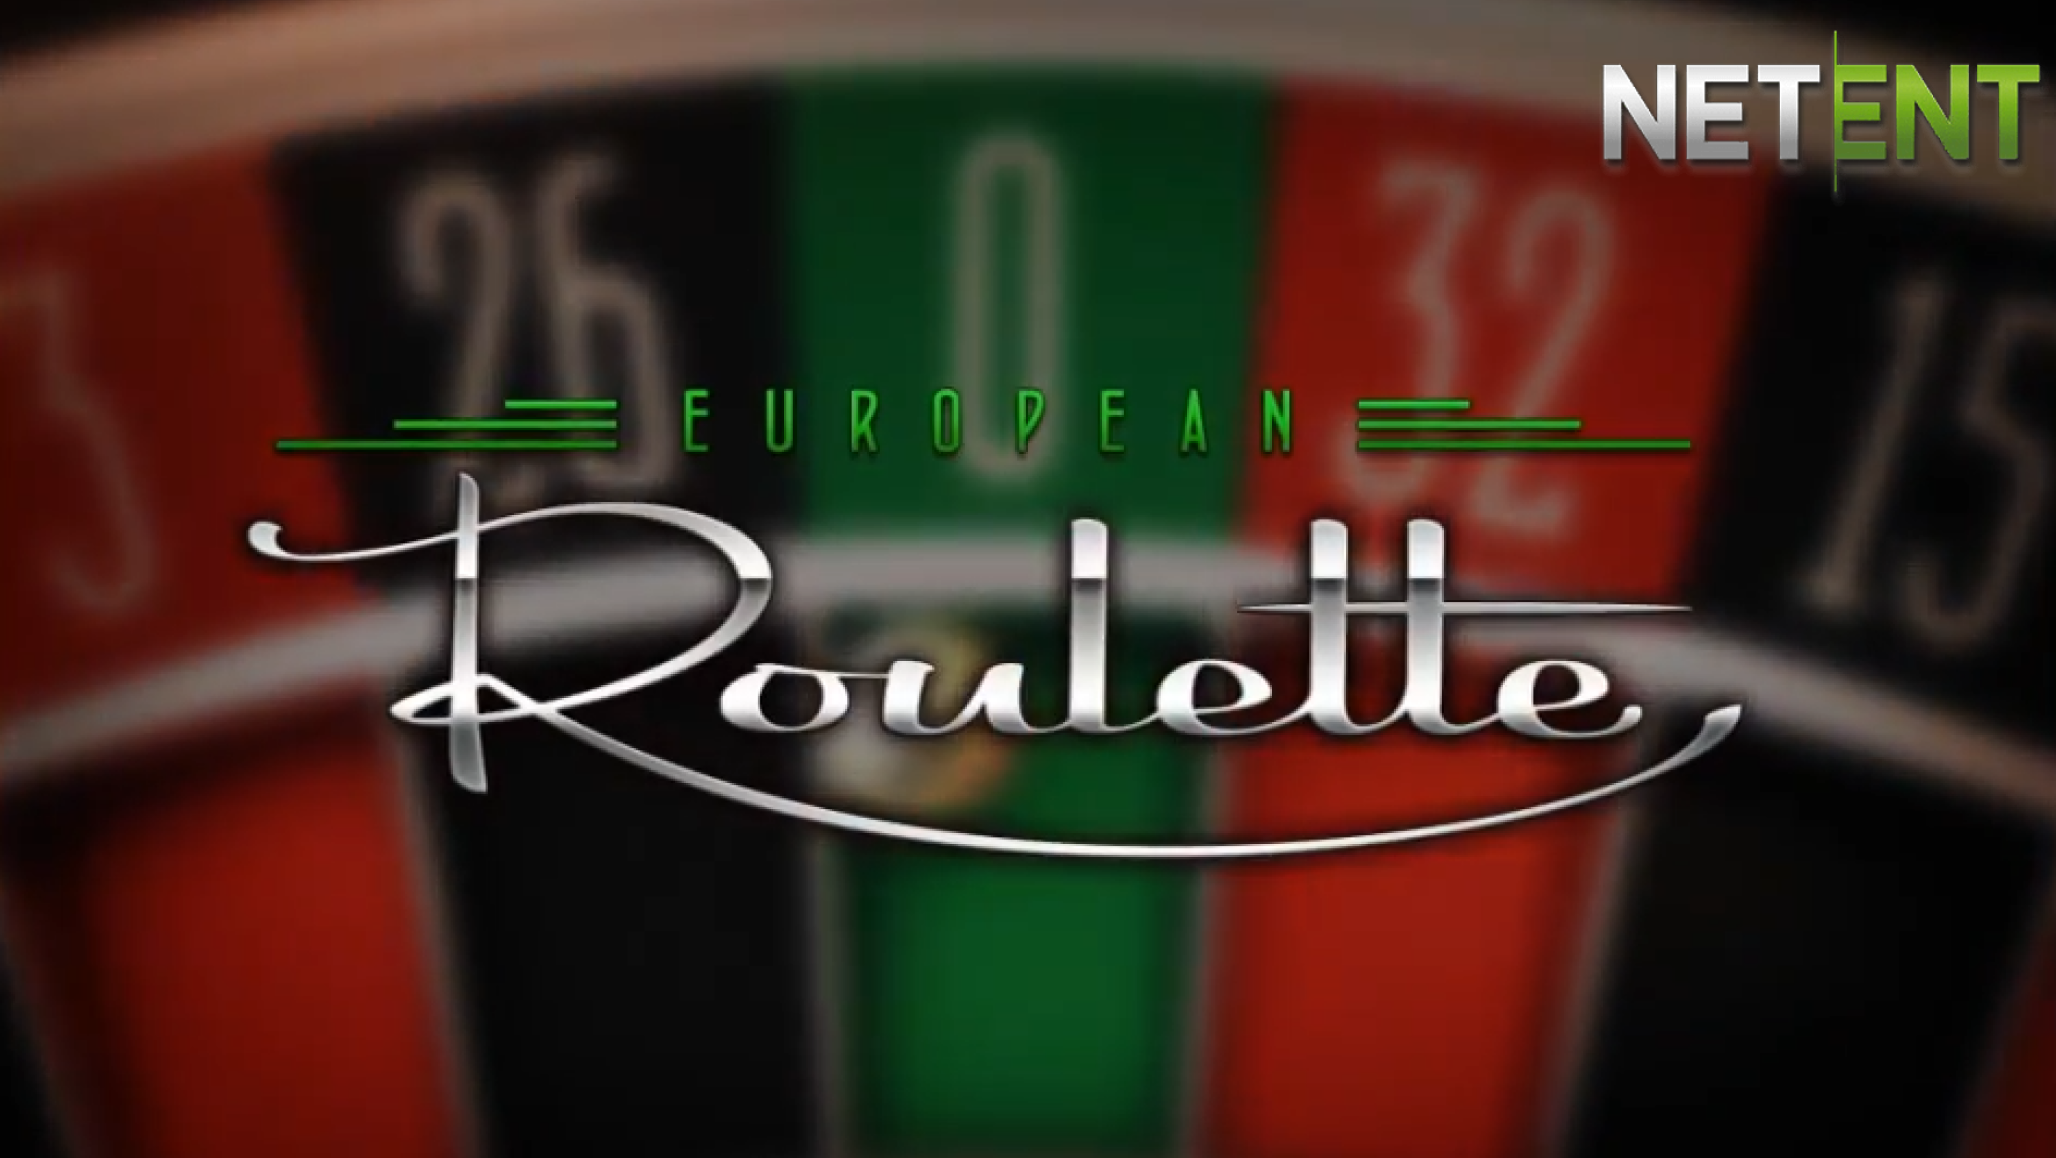 NetEnt의 European Roulette